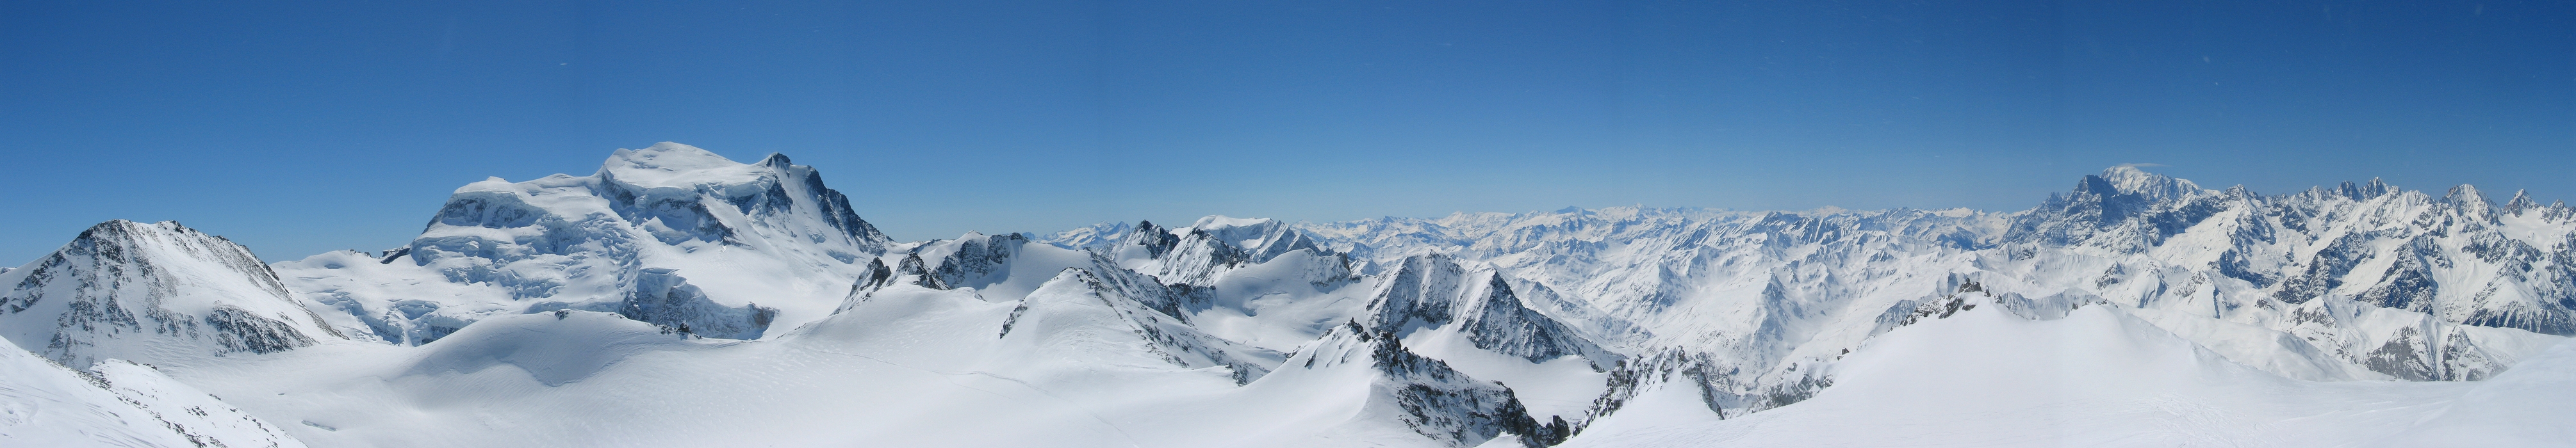 Petit Combin Walliser Alpen / Alpes valaisannes Switzerland panorama 28